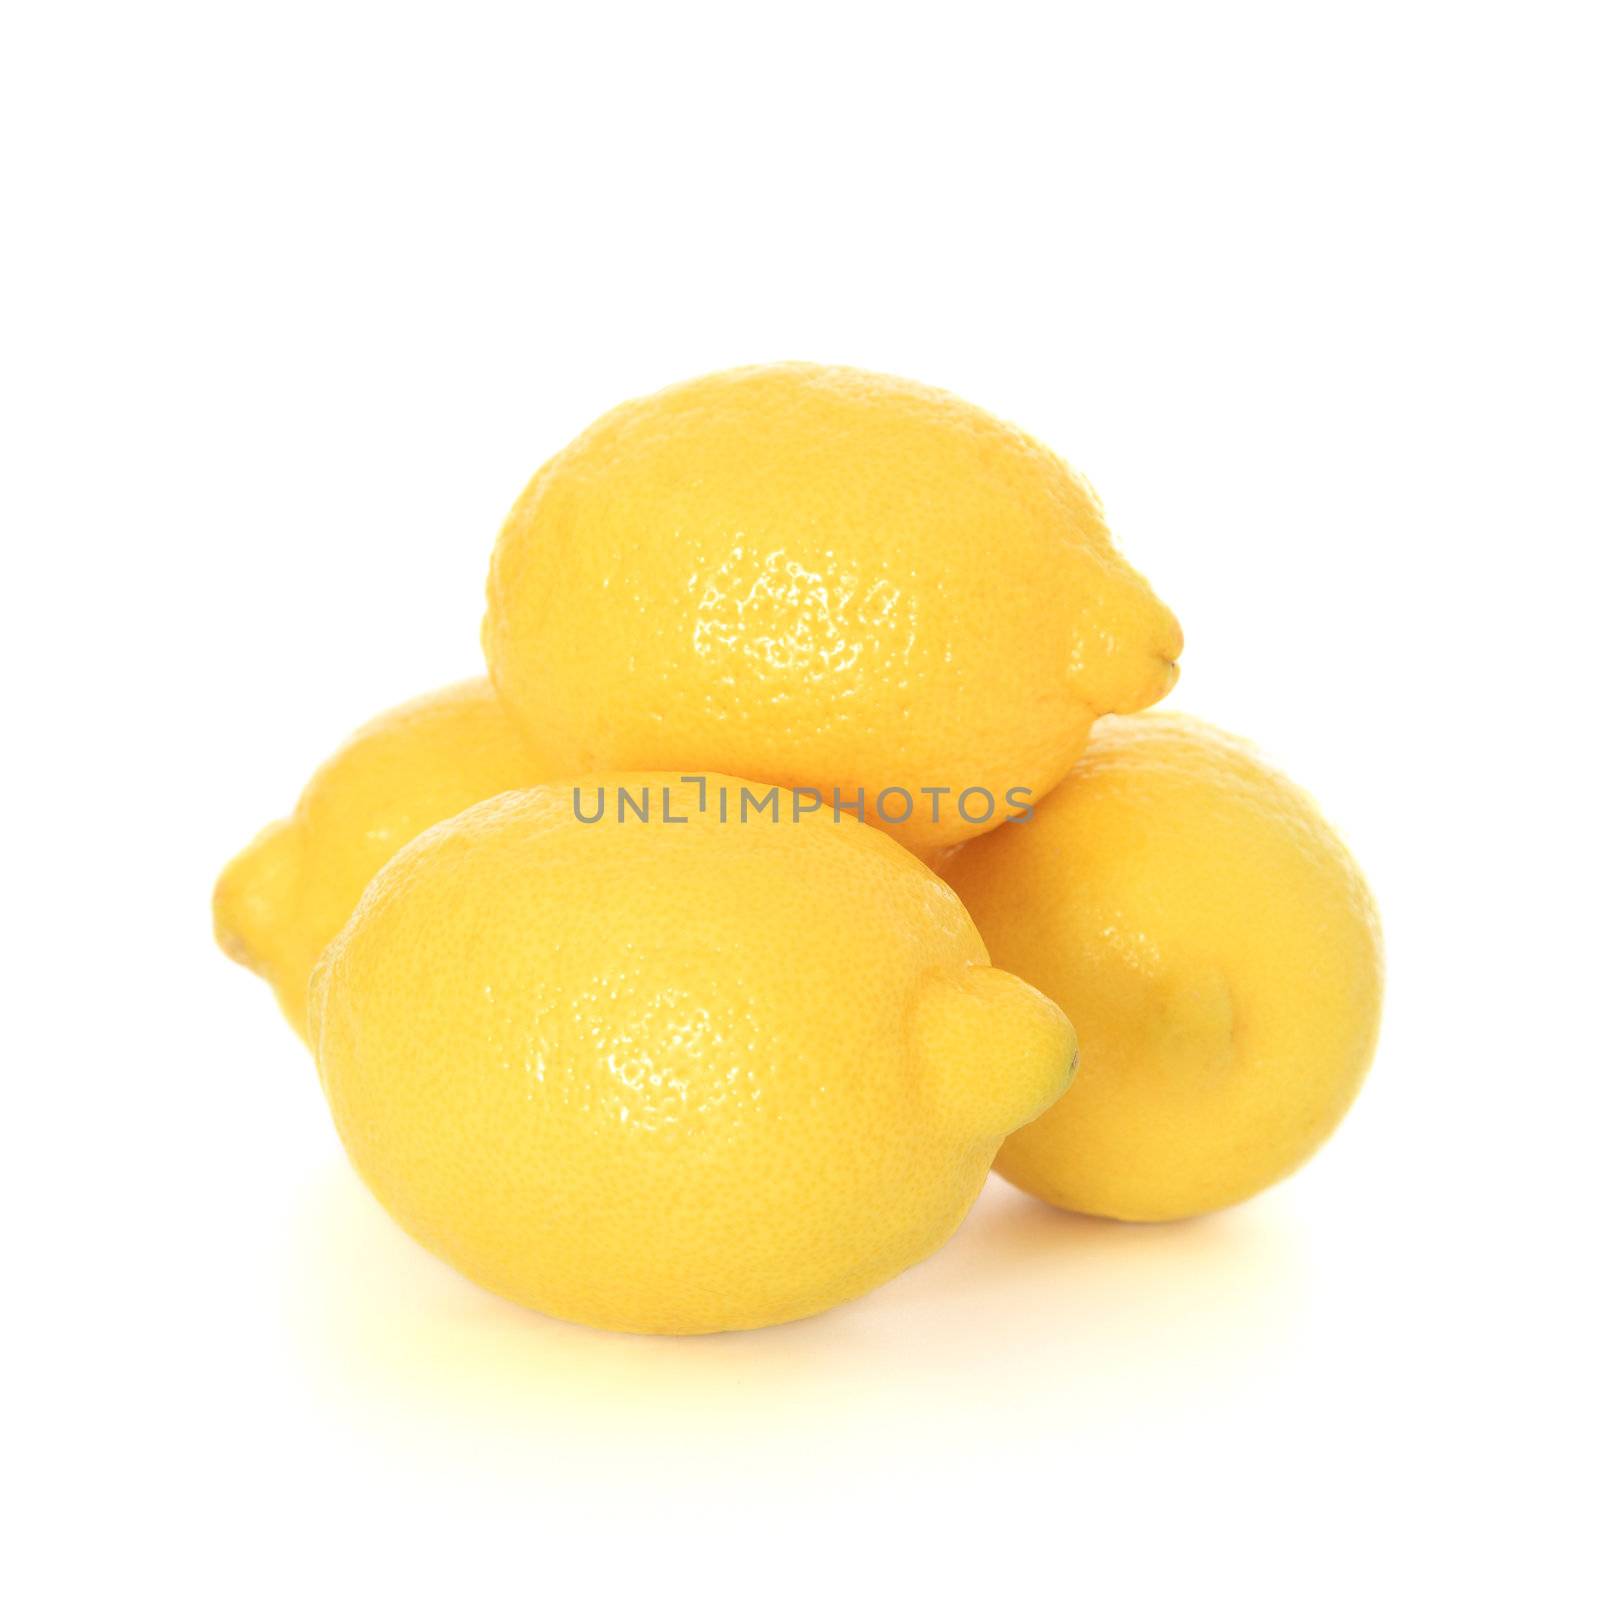 Lemons by kaarsten